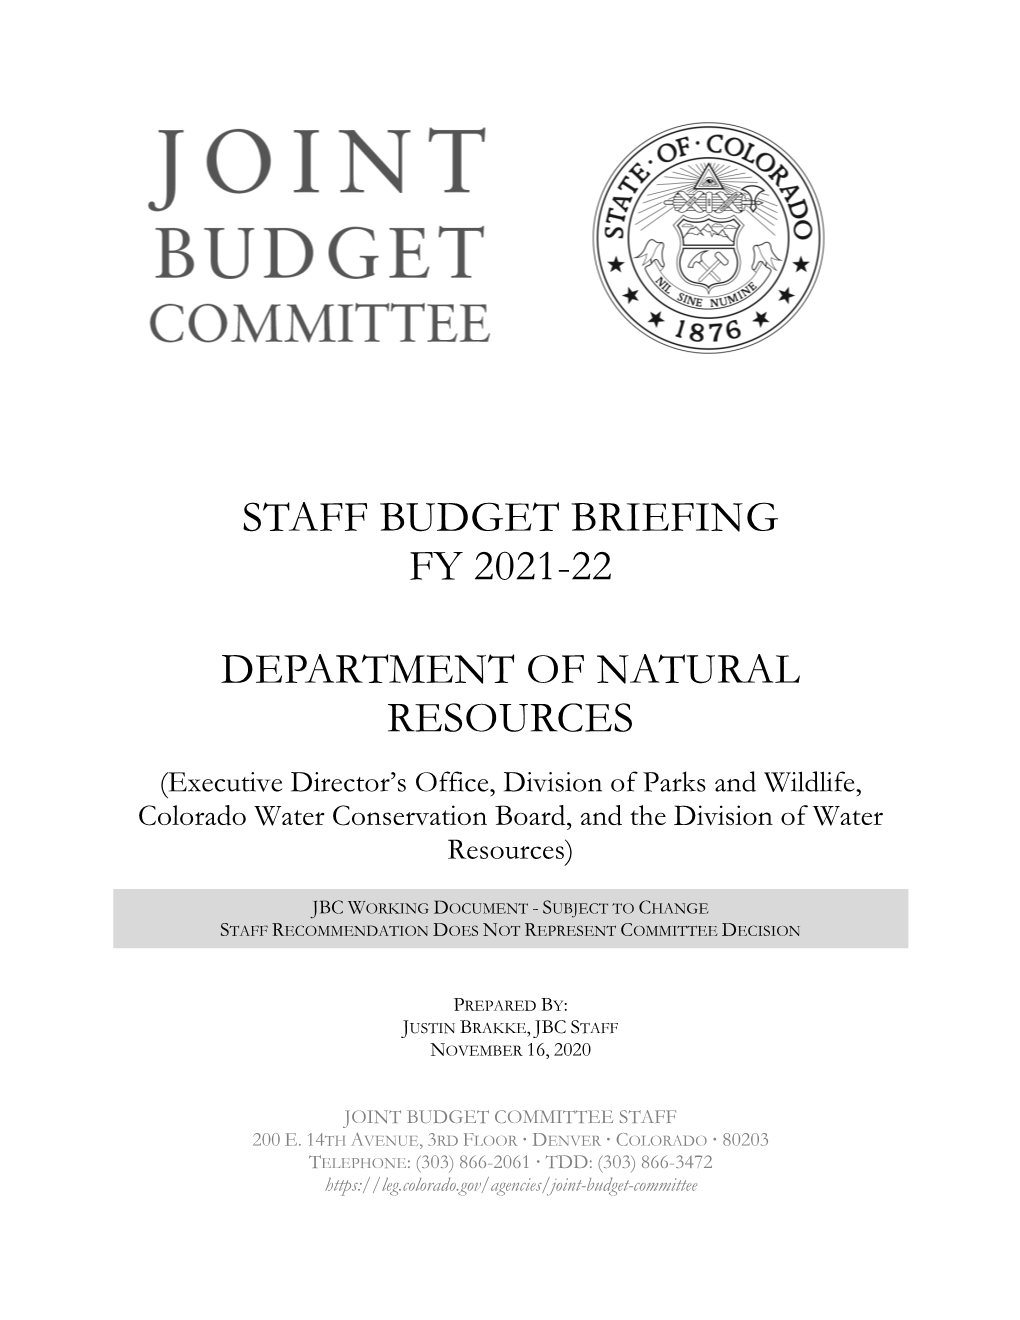 Staff Budget Briefing Fy 2021-22